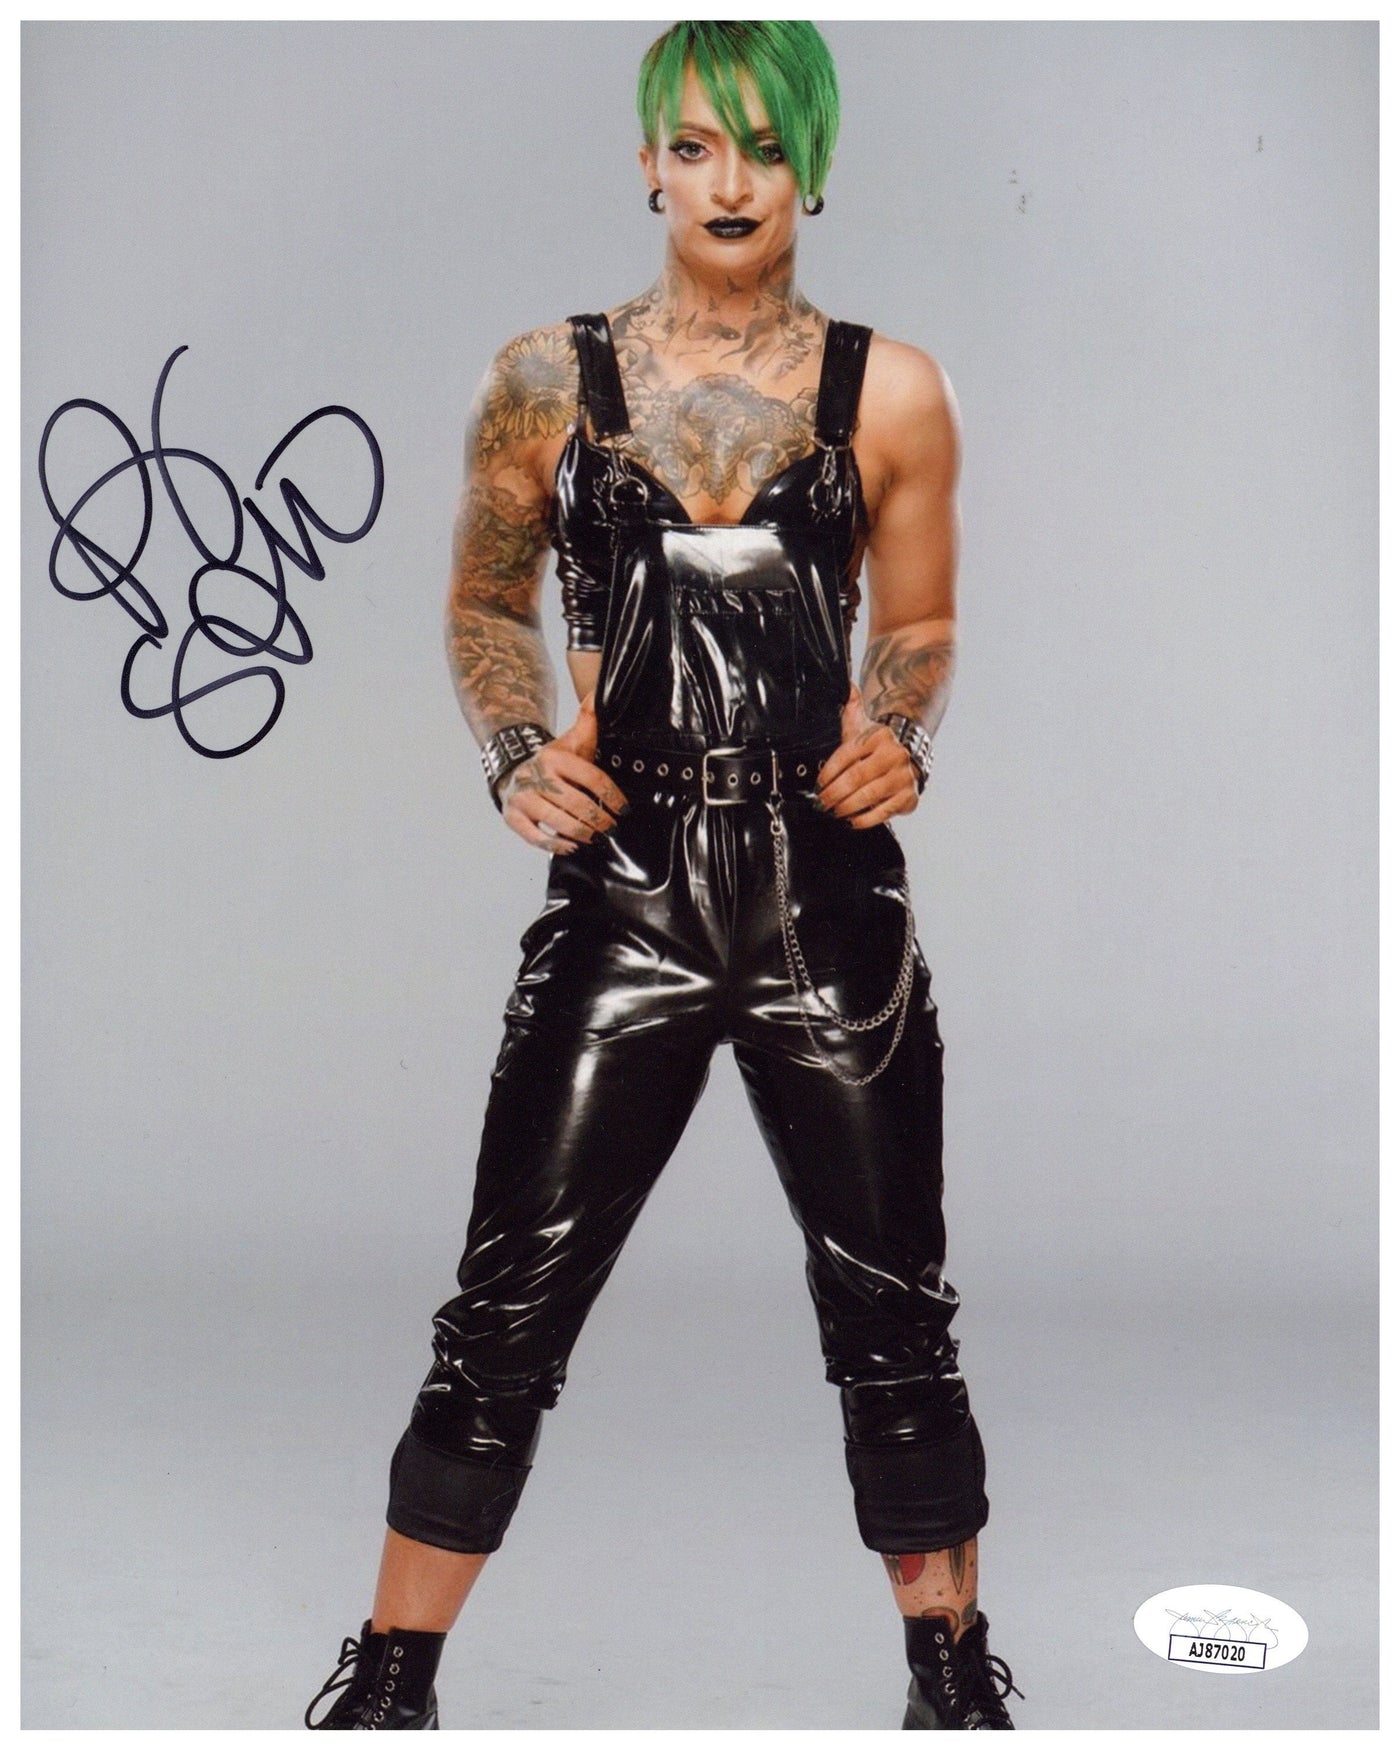 Ruby Soho Signed 8x10 Photo AEW Pro Wrestling WWE Autographed JSA COA